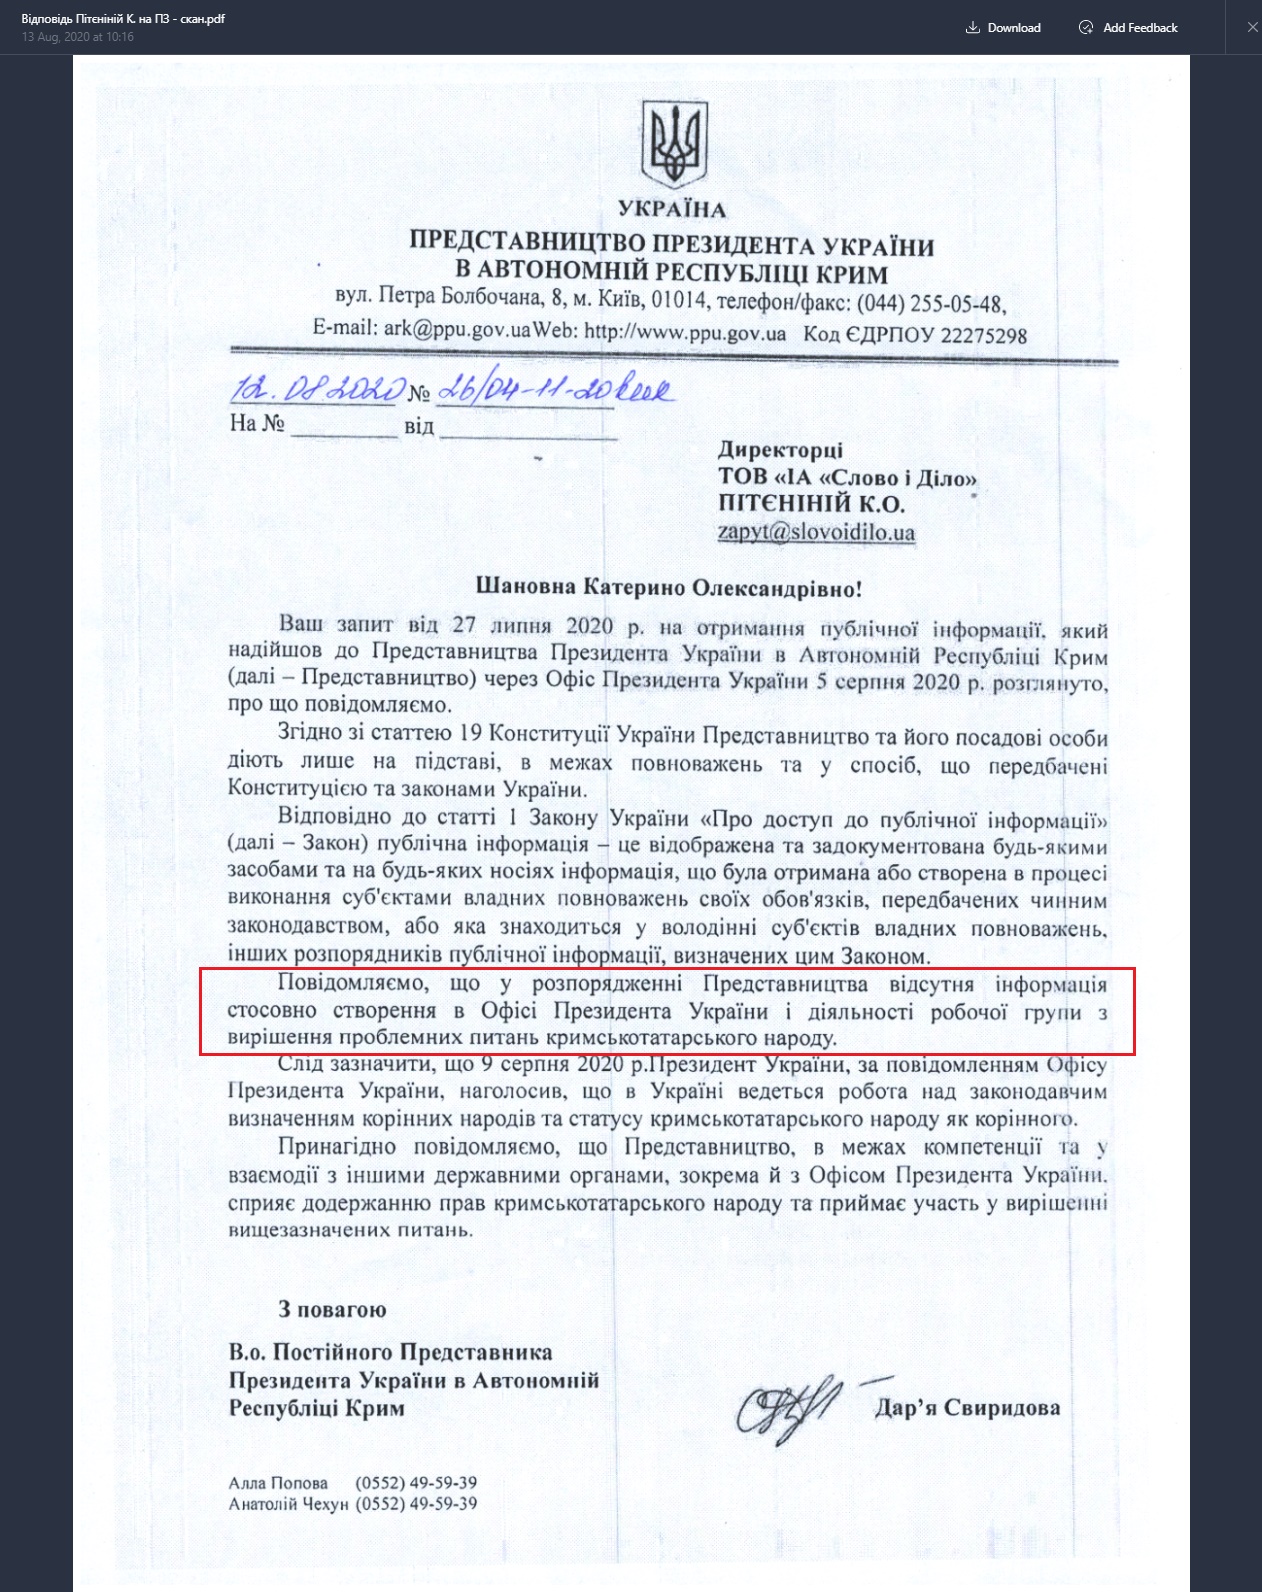 Лист Представництва Президента України в АРК Крим від 12 серпня 2020 року